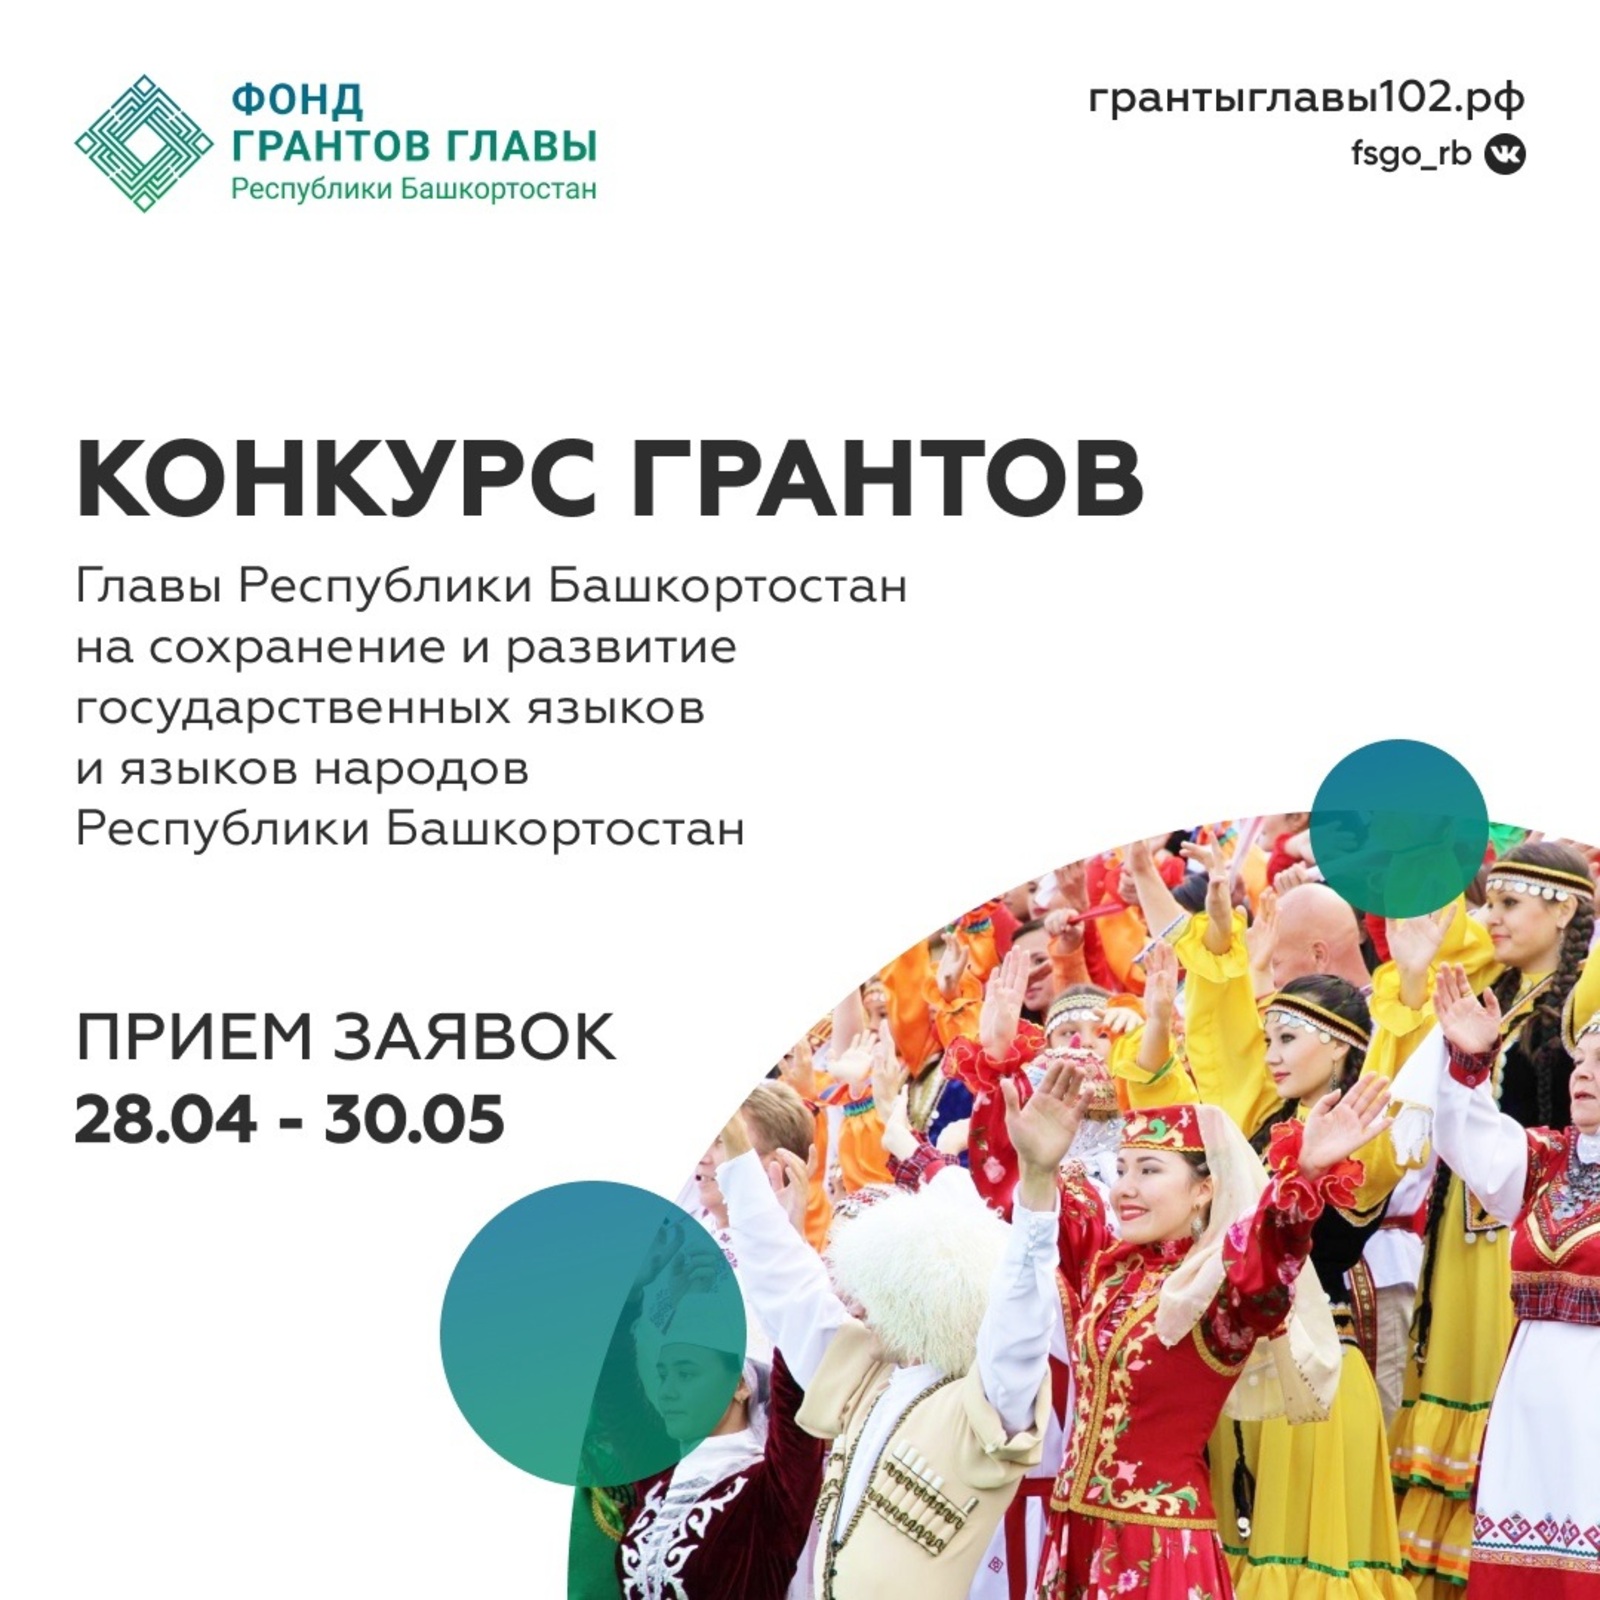 Сегодня Фонд грантов Главы Республики Башкортостан открыл прием заявок на второй конкурс